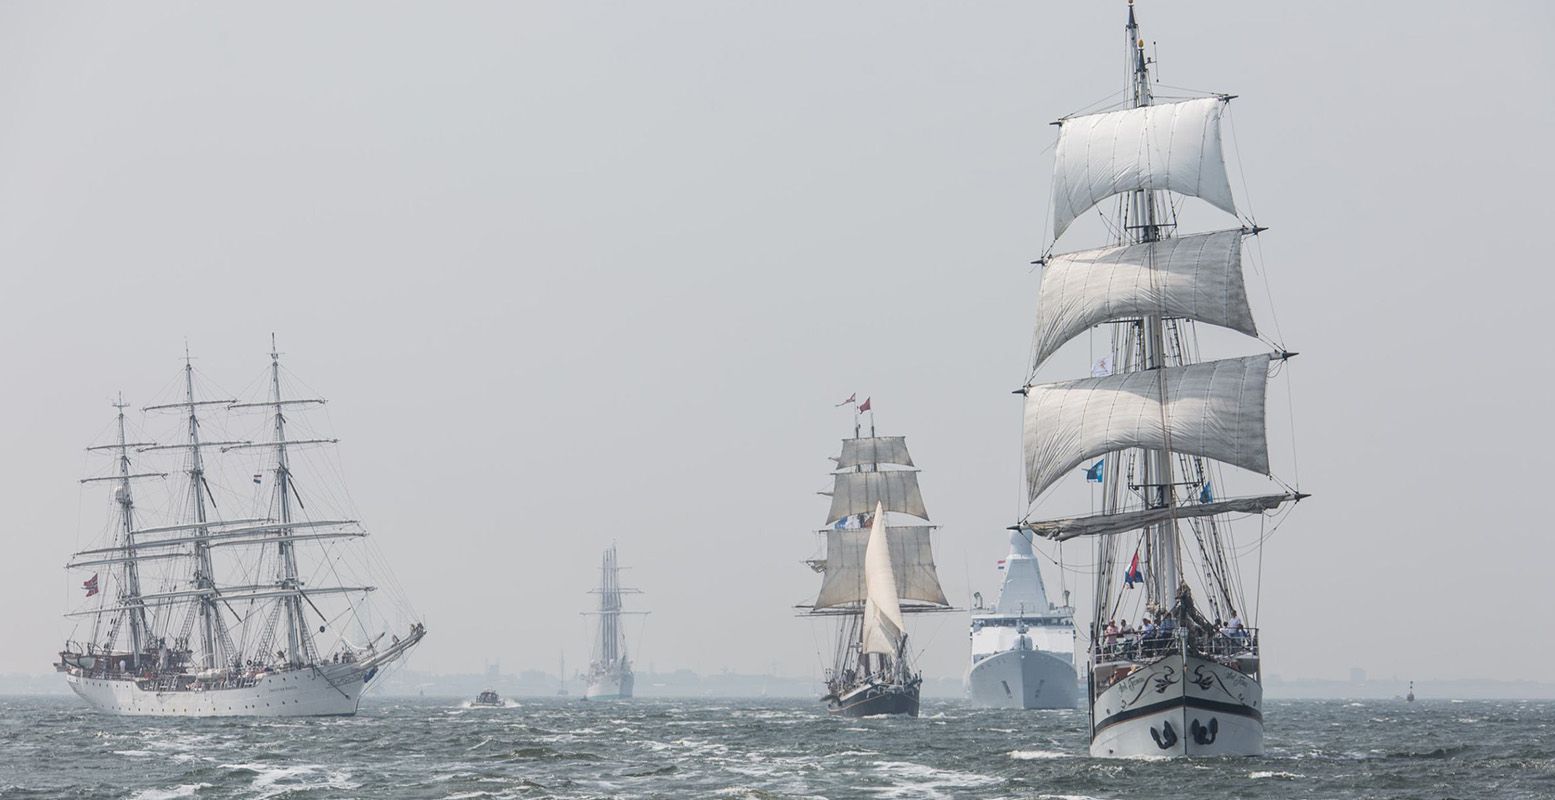 Op donderdag arriveren de schepen in Den Helder. Foto: Citymarketing Den Helder